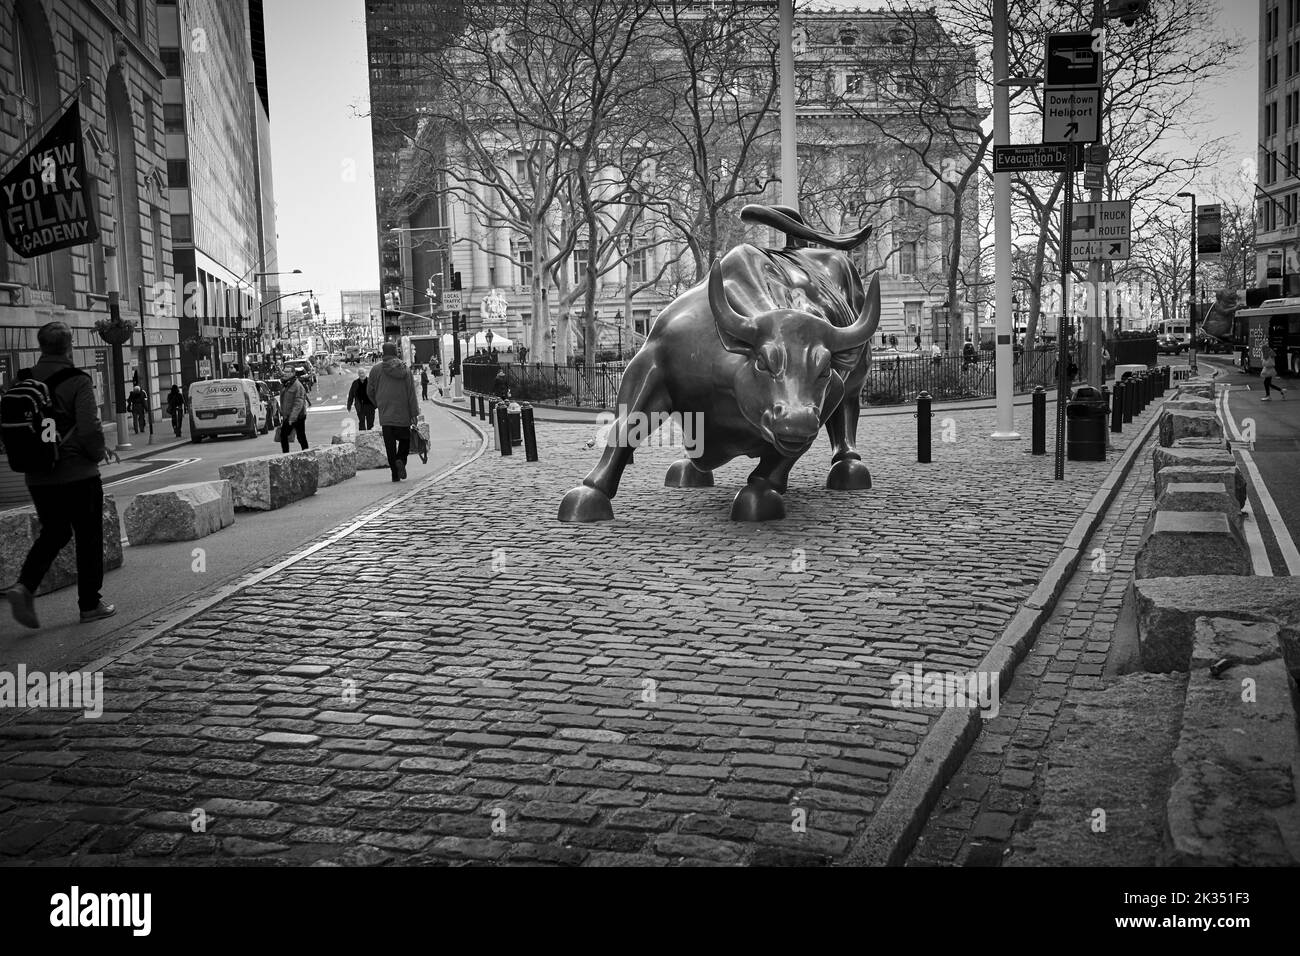 Charging Bull es un popular destino turístico que atrae a miles de personas, simbolizando Wall Street y el Distrito Financiero. Foto de stock